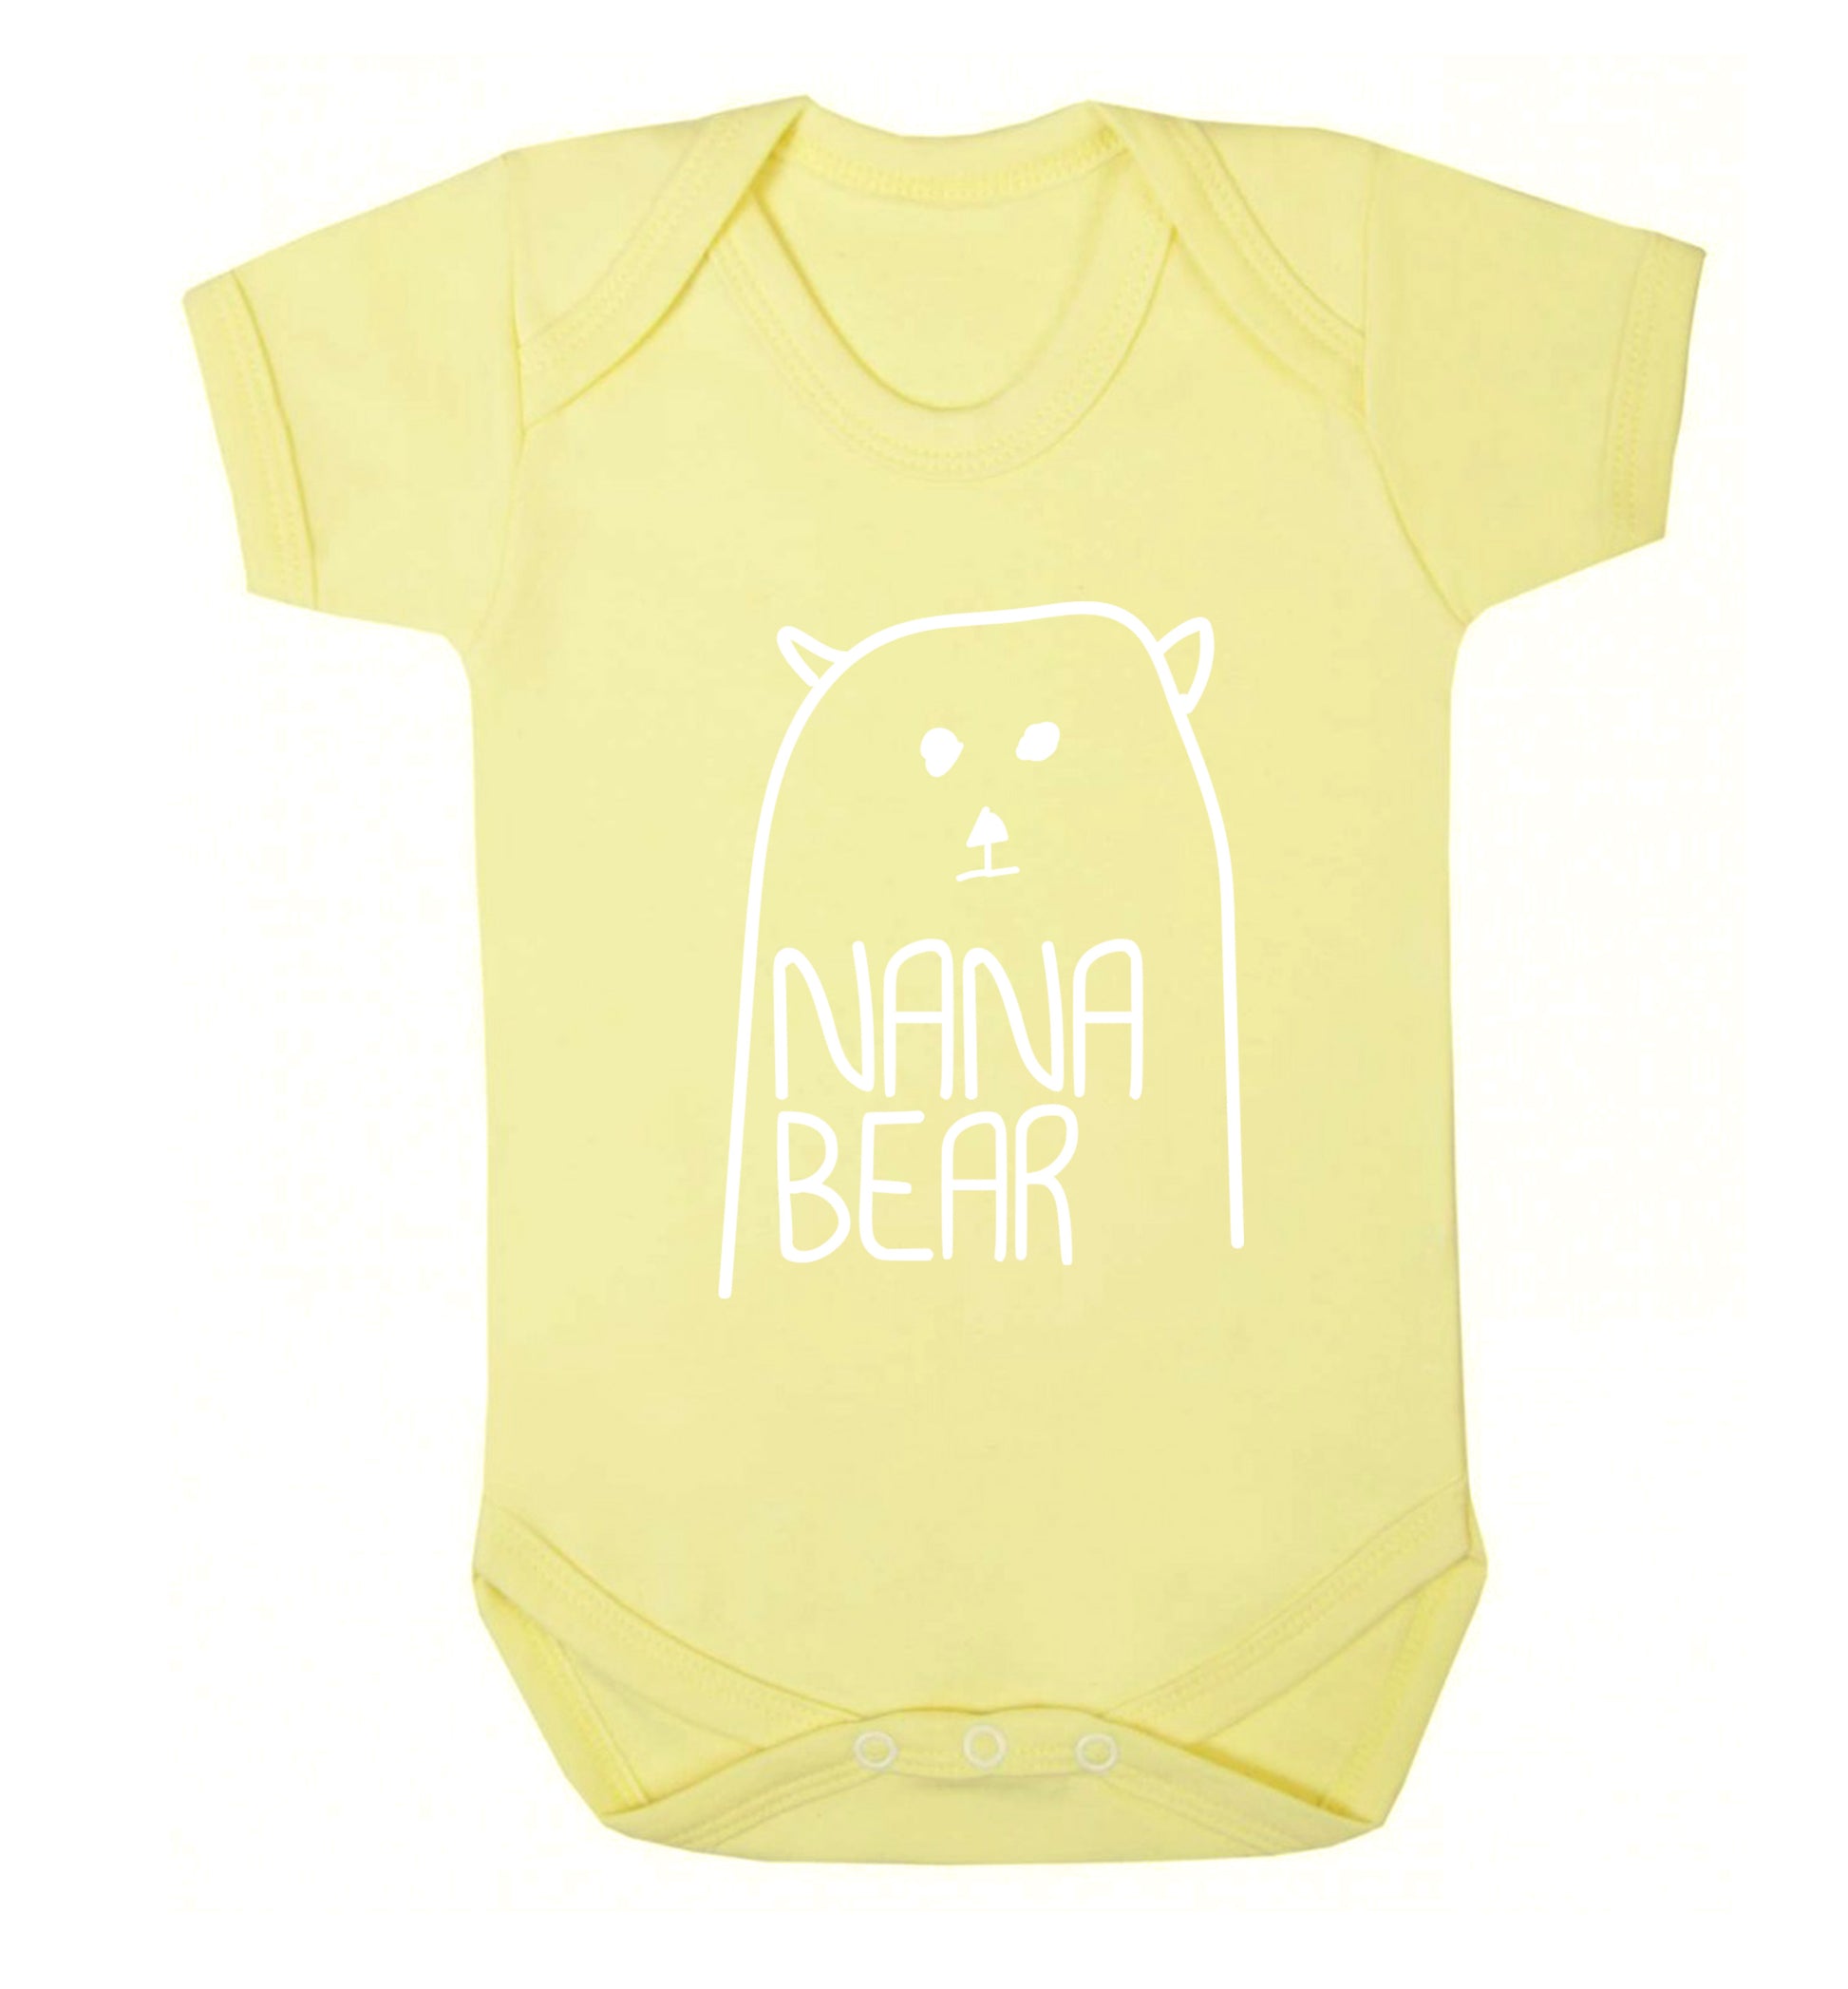 Nana bear Baby Vest pale yellow 18-24 months